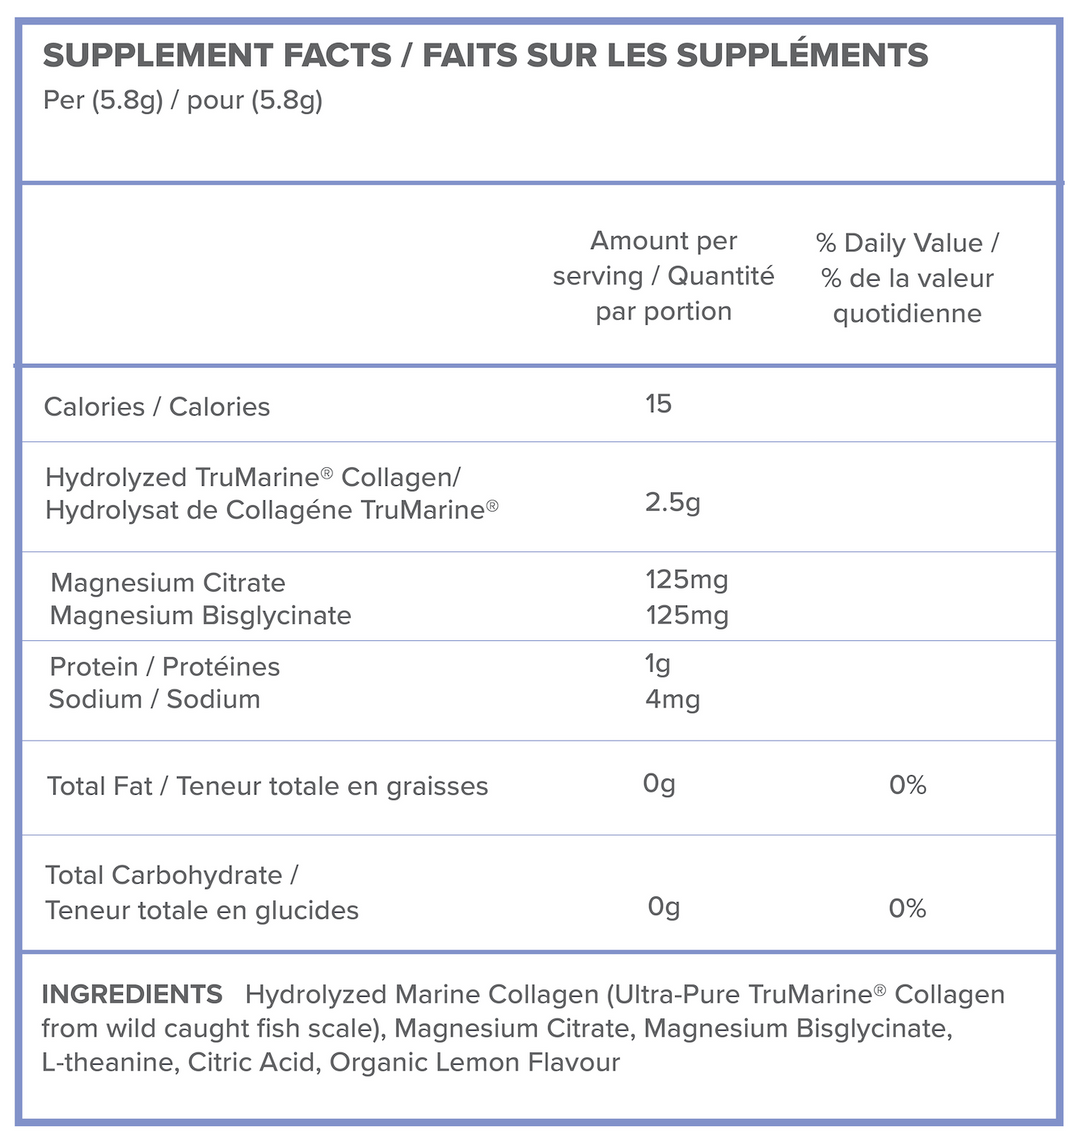 TruMarine® Collagen + Magnesium - 36 Servings